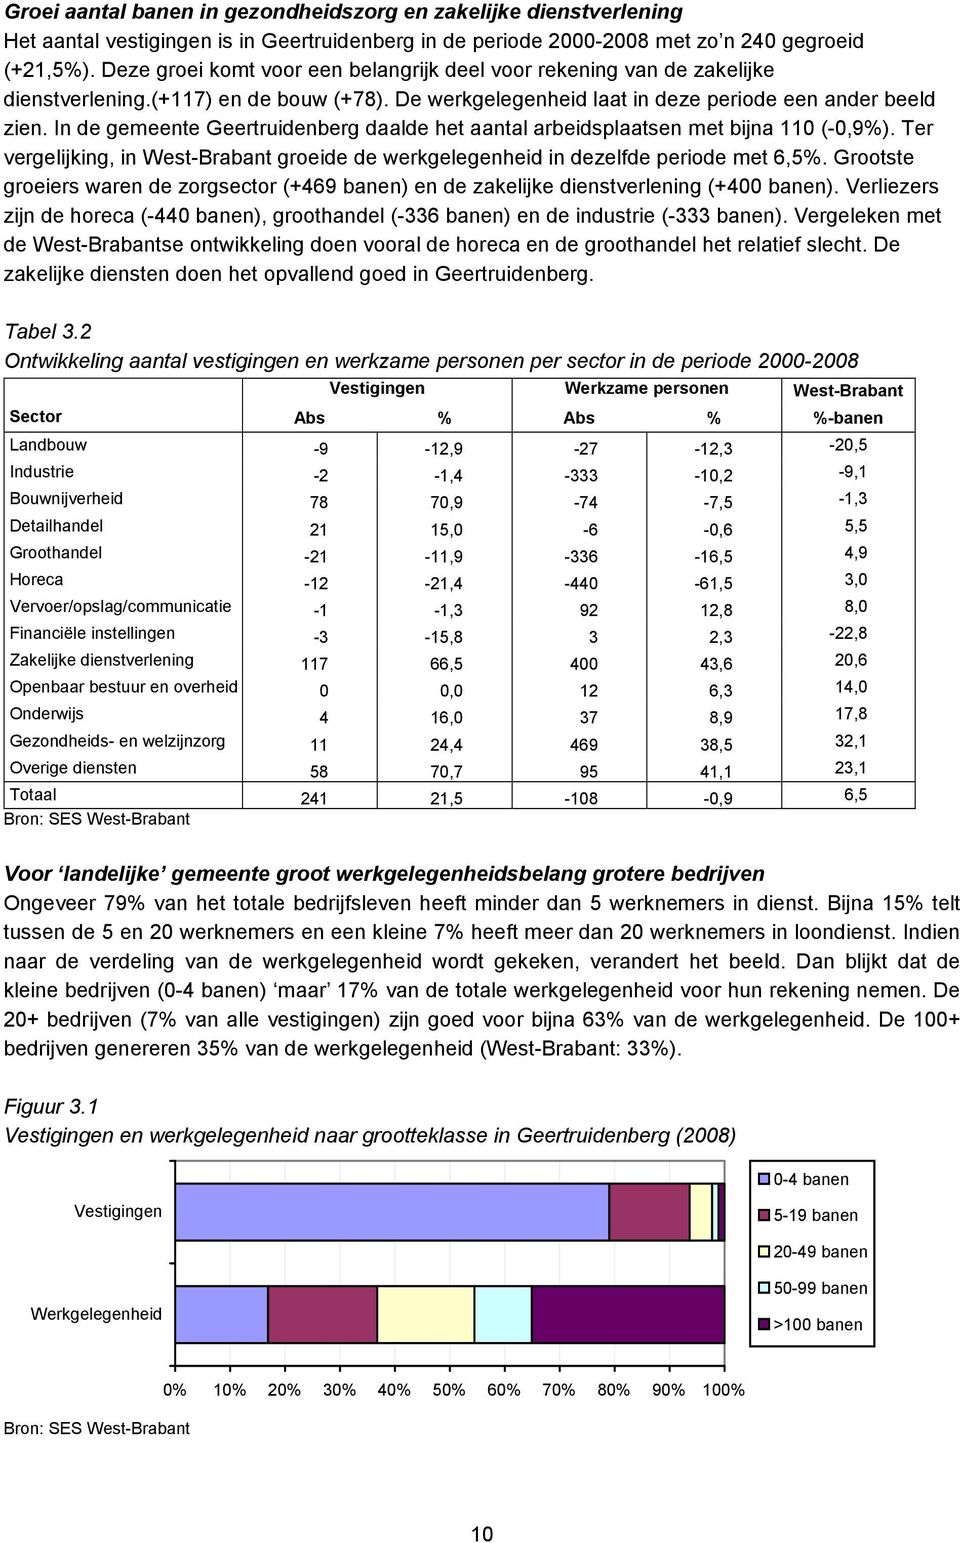 In de gemeente daalde het aantal arbeidsplaatsen met bijna 110 (-0,9%). Ter vergelijking, in West-Brabant groeide de werkgelegenheid in dezelfde periode met 6,5%.